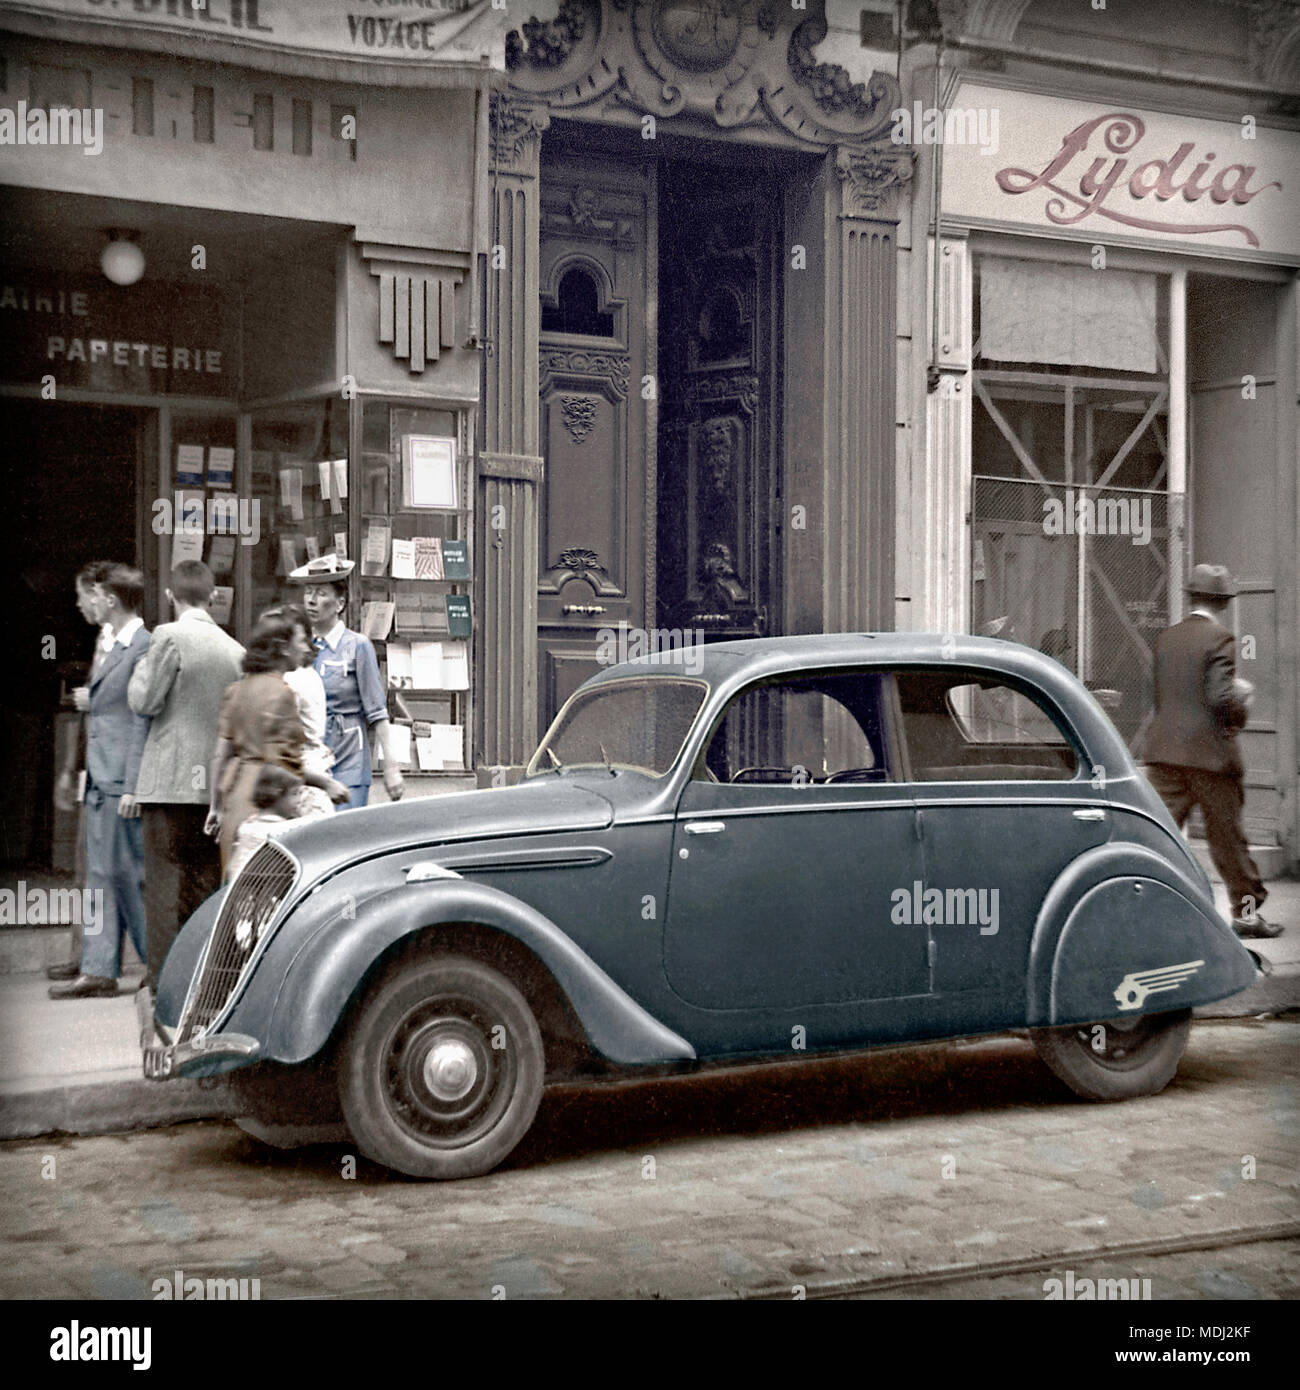 Auf einer Straße in Frankreich 1948 geparkt, das Peugeot 202 Berline. Der Stahl Körper 202 sofort erkennbar war, als ein Peugeot von der Art und Weise, dass die Scheinwerfer vorn hinter dem Frontgrill gesetzt wurden. Dieser 4-türige Berline (Limousine) Version kam mit einem Stahl-panel Schiebedach Dach. 1948 wurde die Räder wurden mit verchromten Radkappen verziert. Bild vom Original Kamera B&W negativ gefärbt. Stockfoto